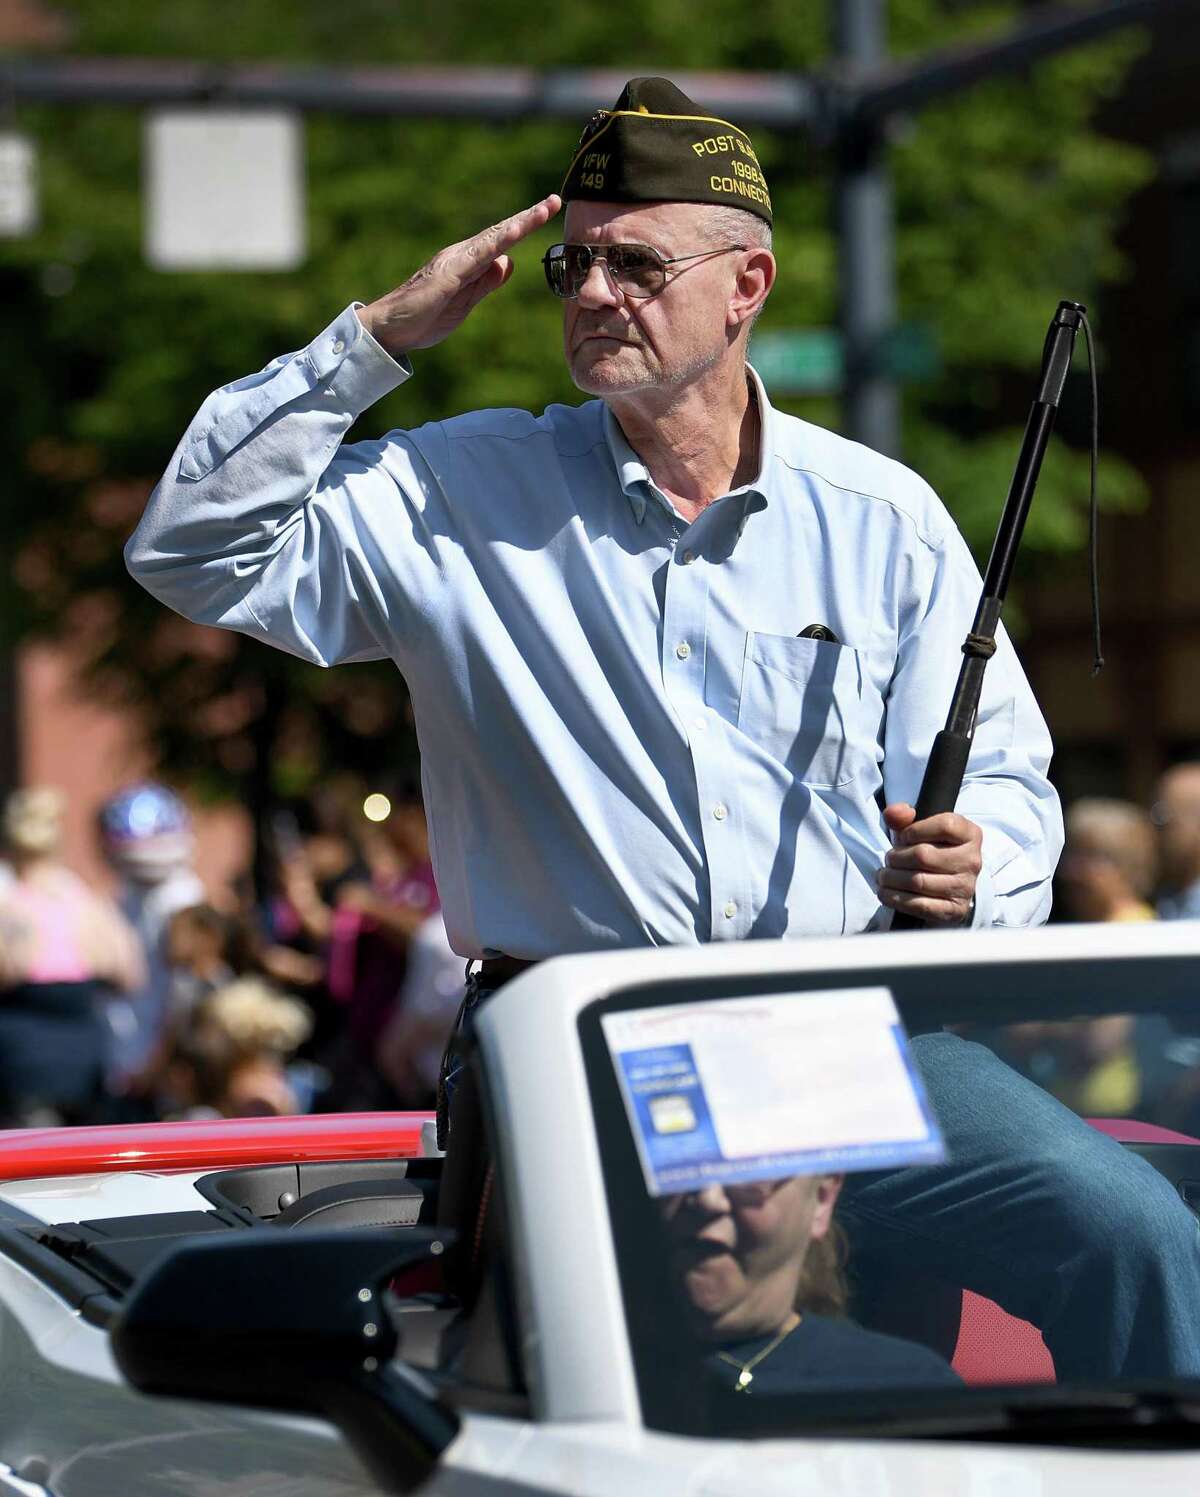 Vietnam Veteran Wayne Dengler, with Danbury VFW Post 149, salutes during Danbury's Memorial Day Parade Monday, May 30, 2022.